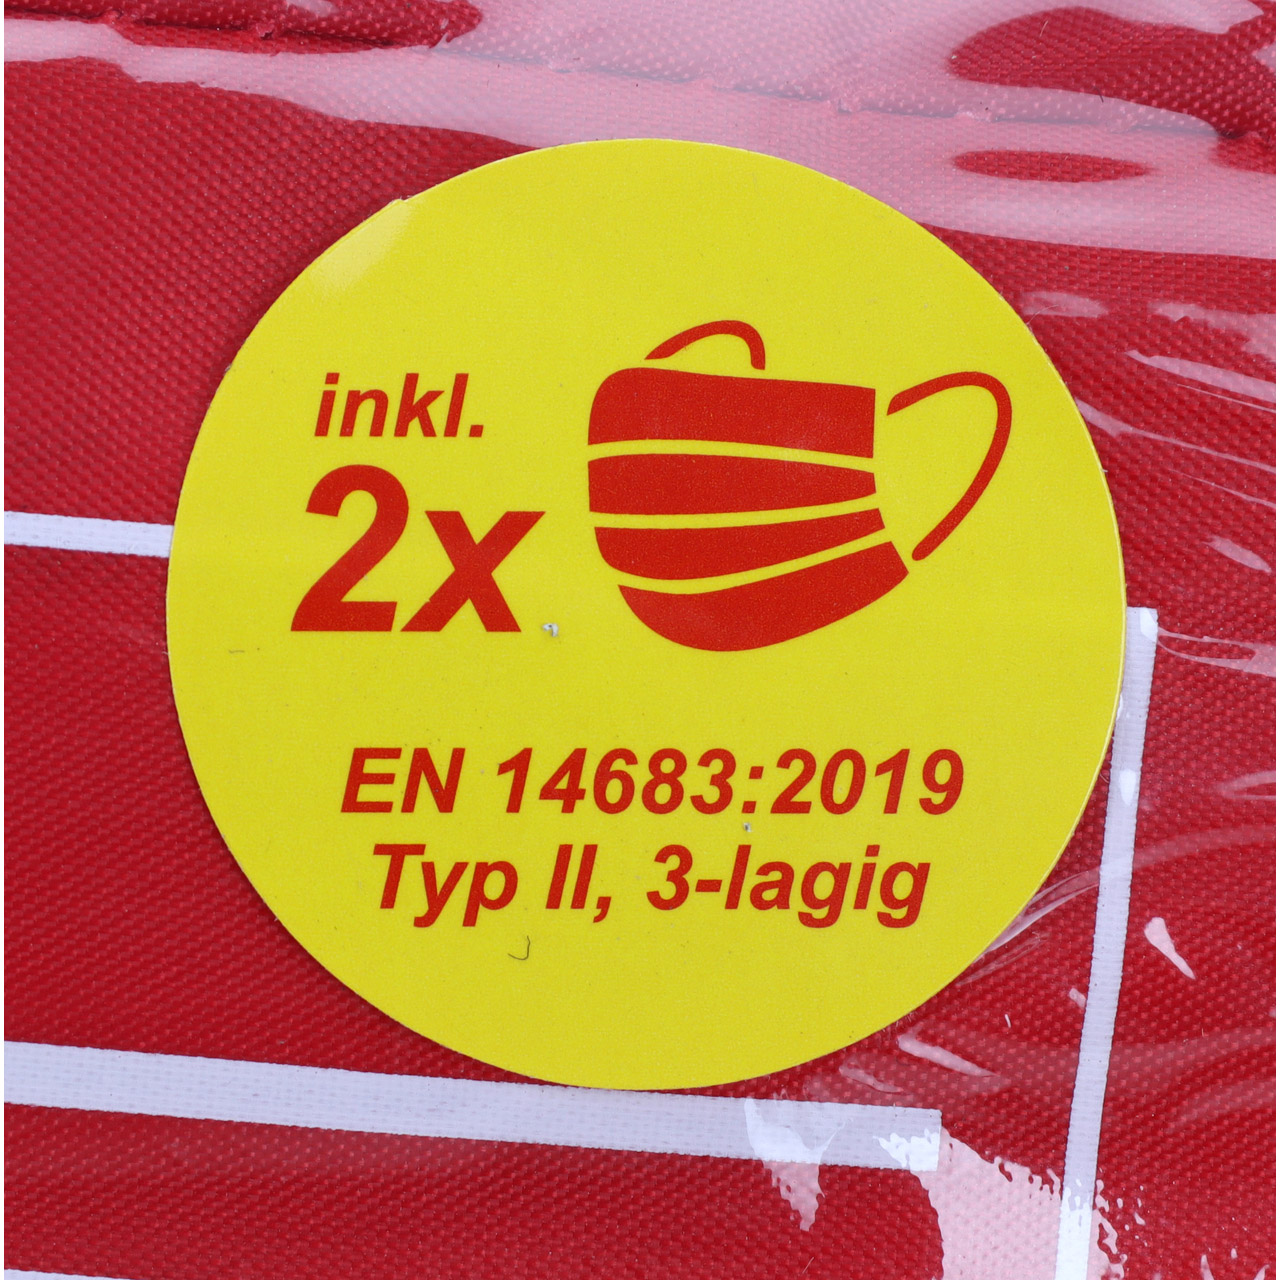 4x AUTO PKW Verbandtasche Verbandkasten Erste-Hilfe DIN13164-2022 (MHD 10.2027)